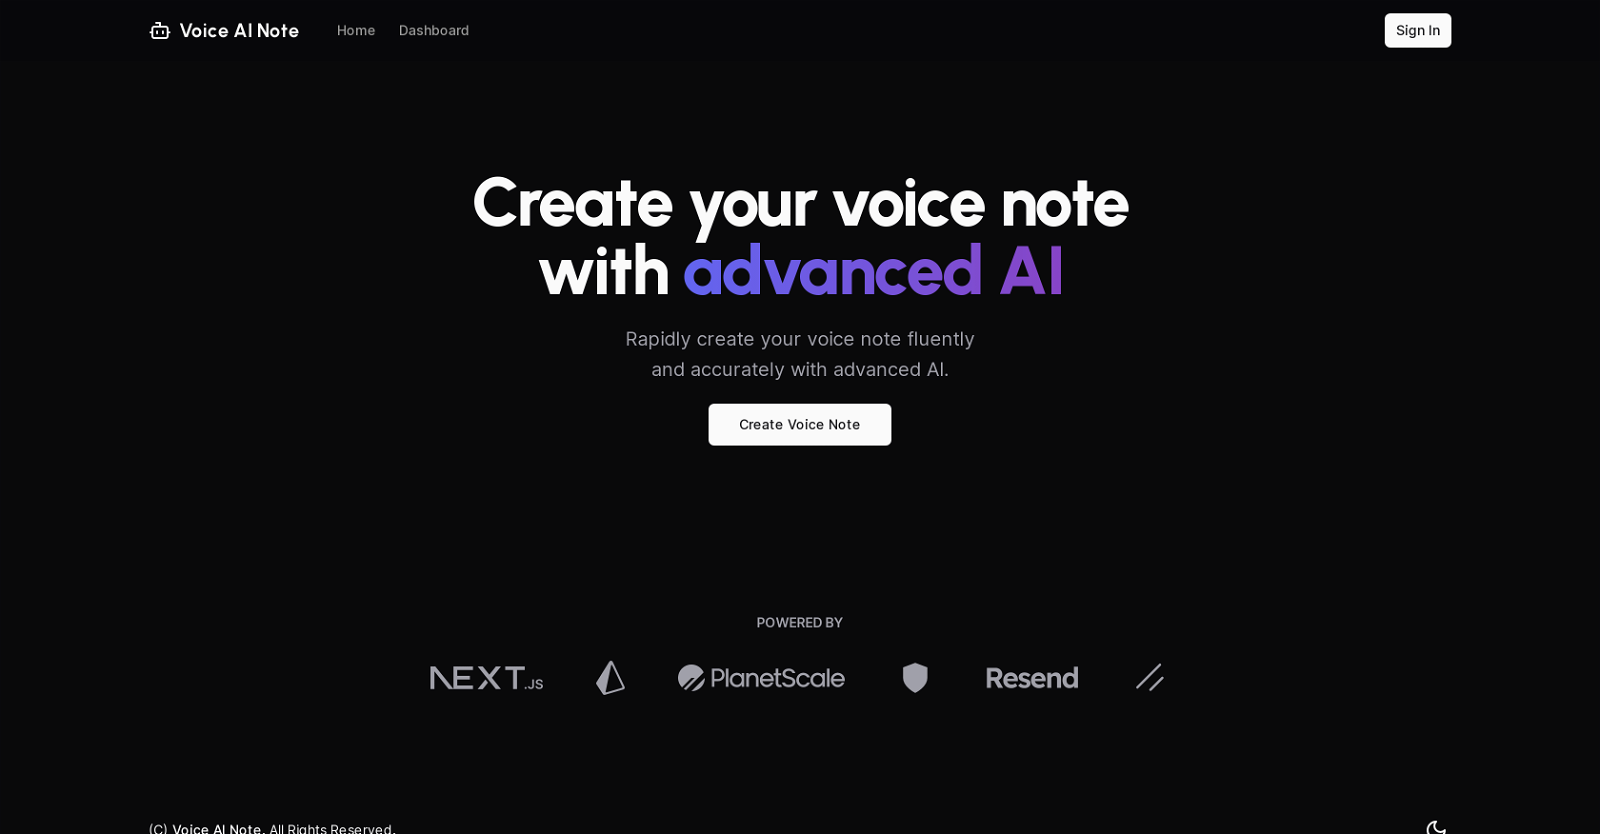 Voice AI Note website